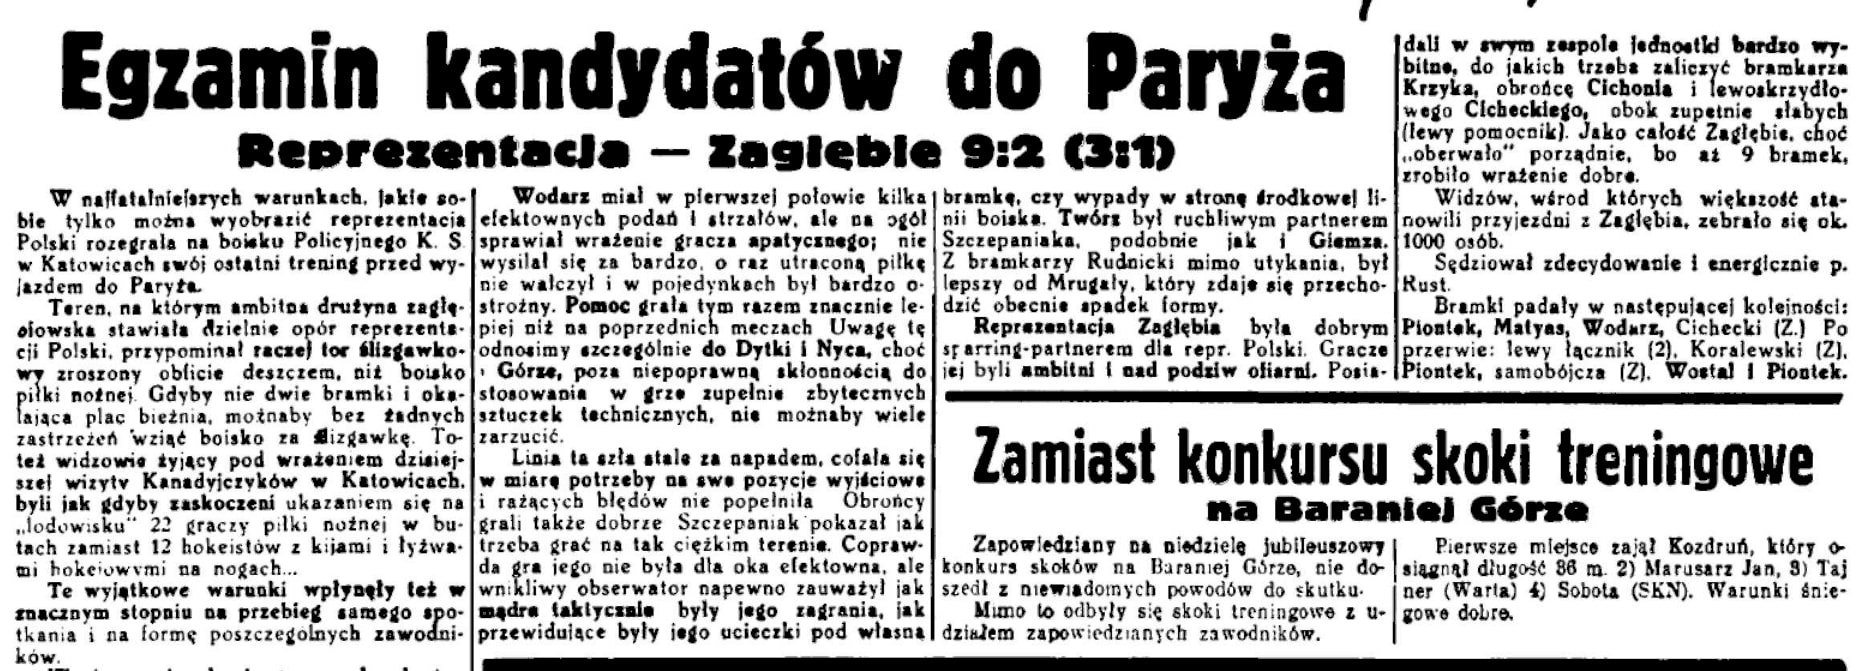 Polska Zachodnia nr 16 z16.01.1939 s. 4 cz1